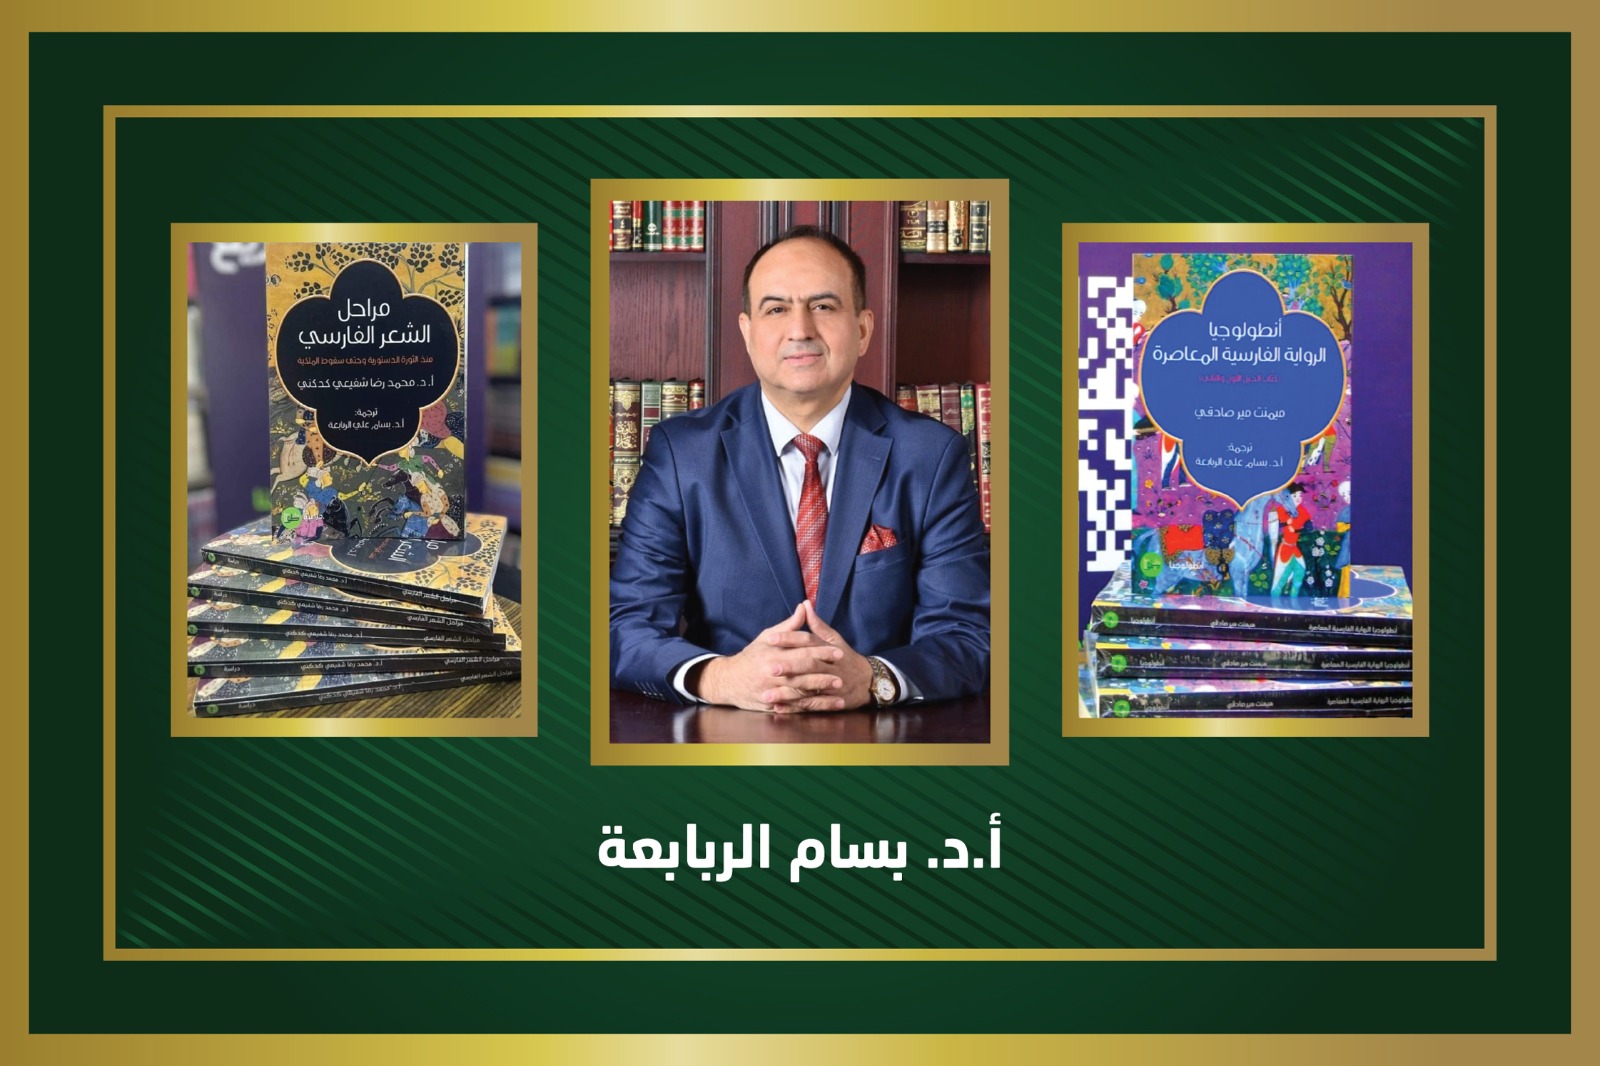 الربابعة يترجم كتابين من الأدب الفارسي المعاصر إلى اللغة العربية